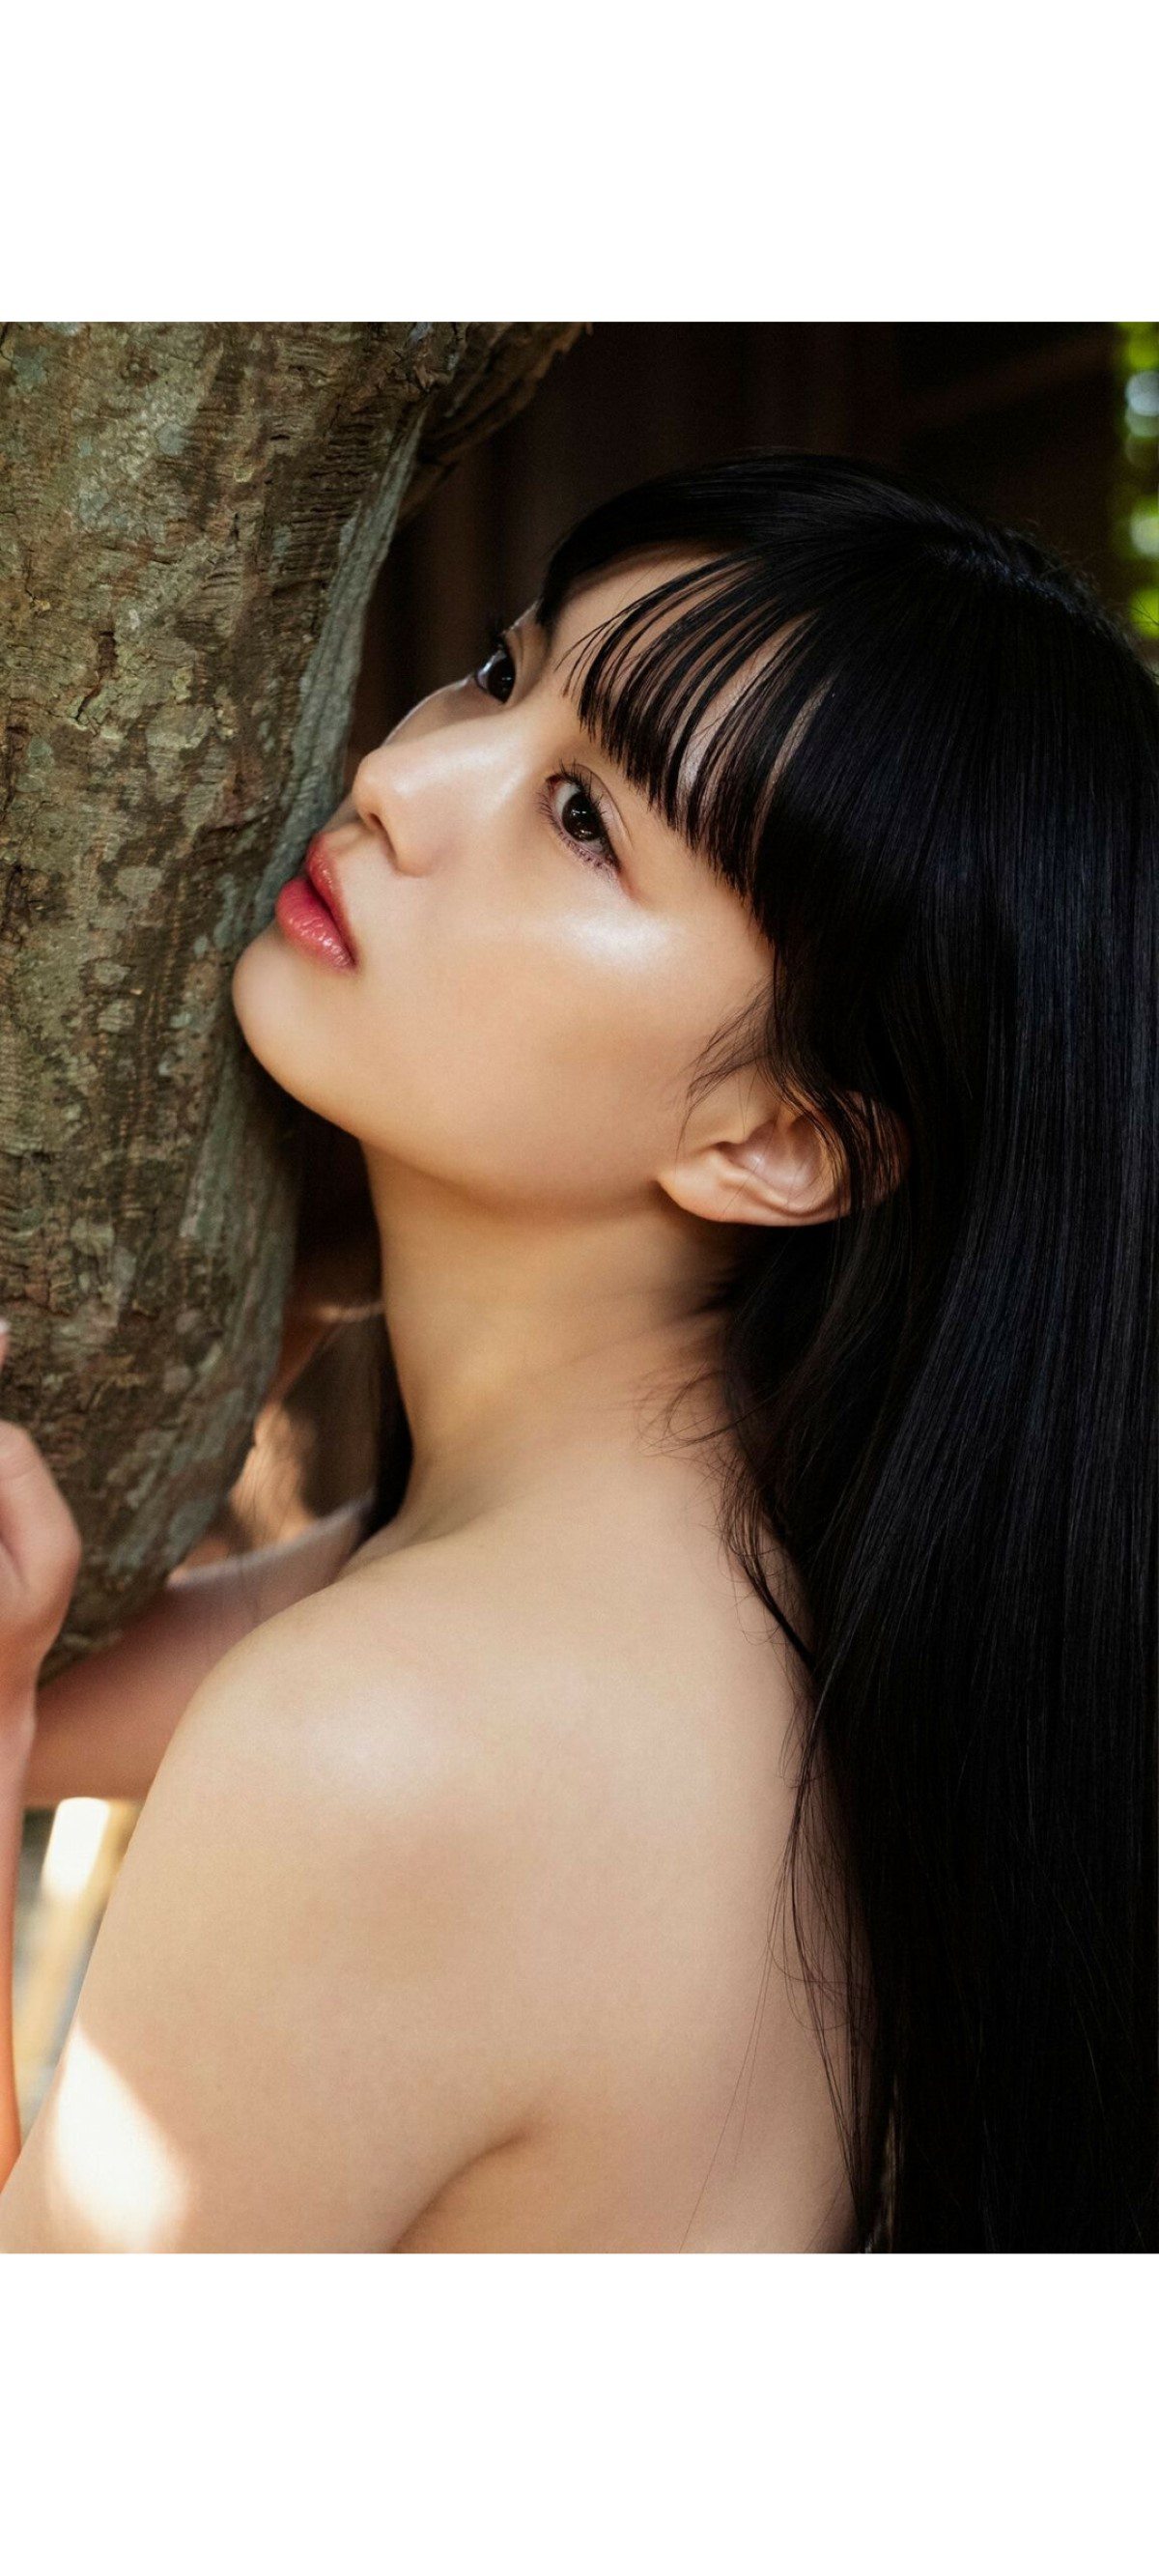 Weekly Photobook 2020 12 07 Noa Tsurushima 鶴嶋乃愛 A natural actress 生まれながらにして女優 0019 6962146260.jpg